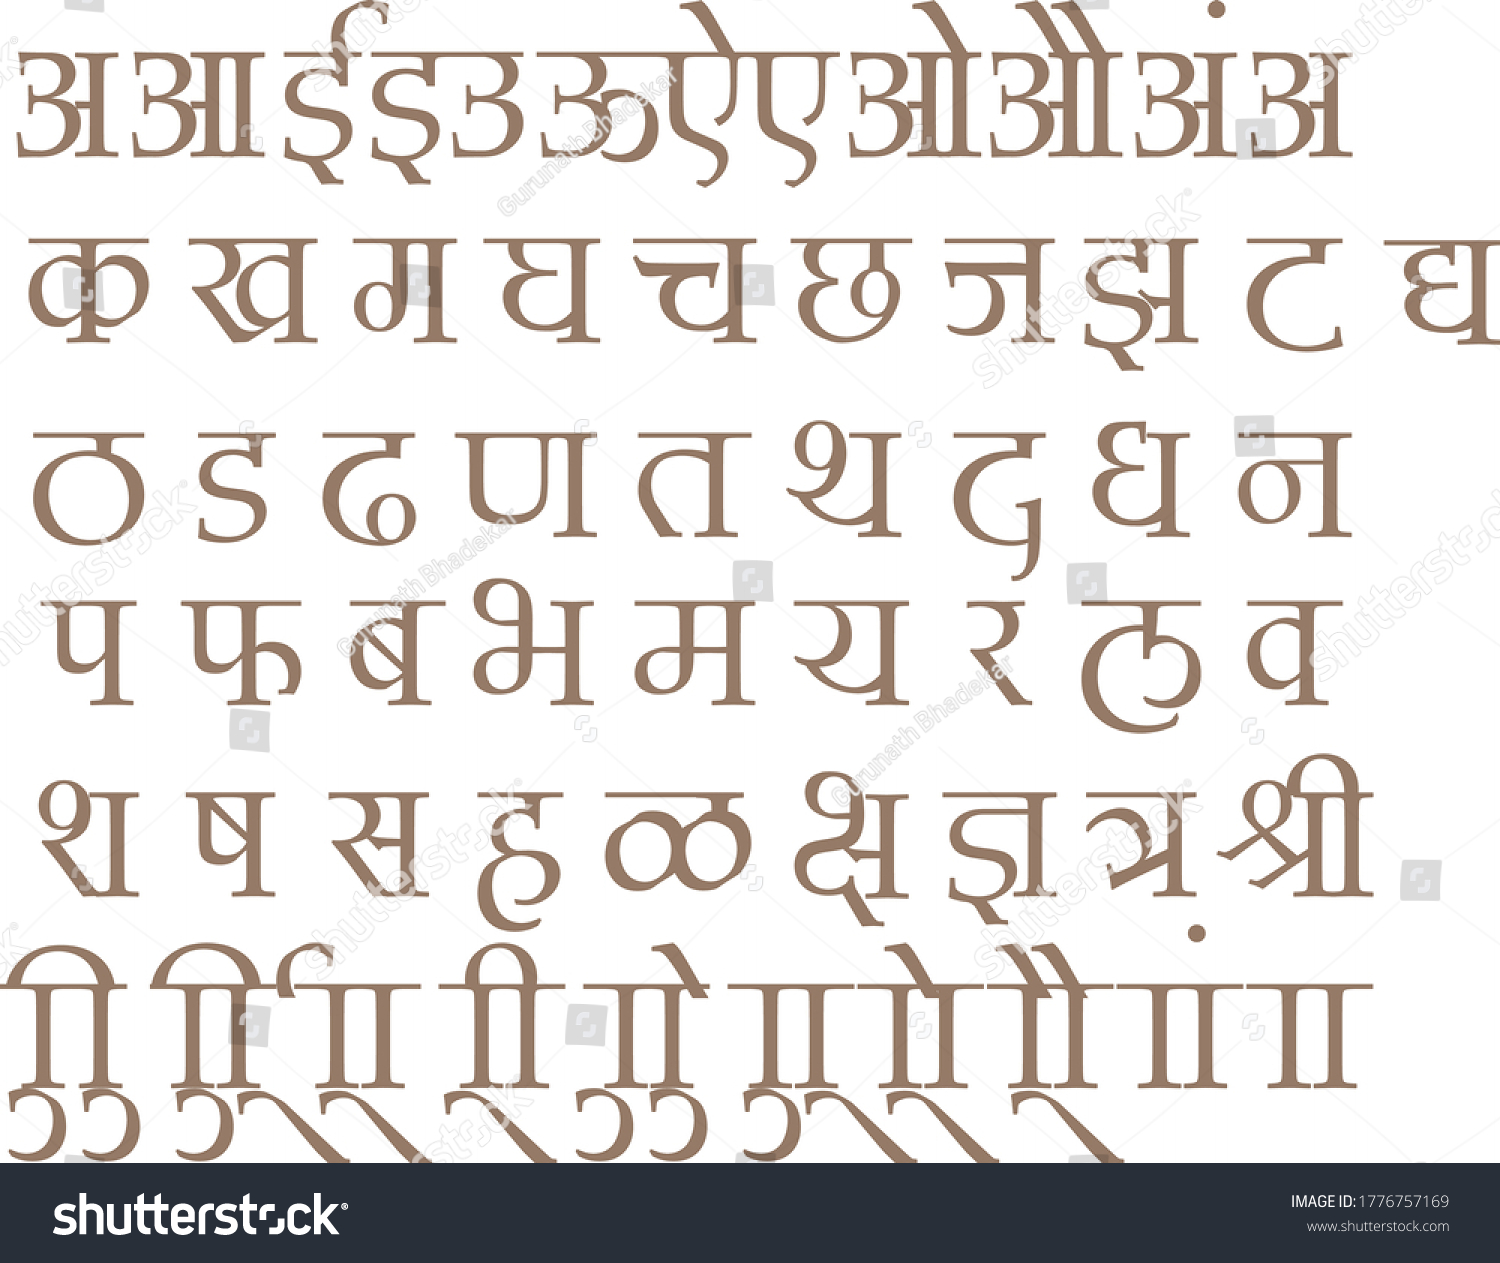 SVG of 
Handmade Devanagari font for Indian languages Hindi, Sanskrit and Marathi Indian languages svg